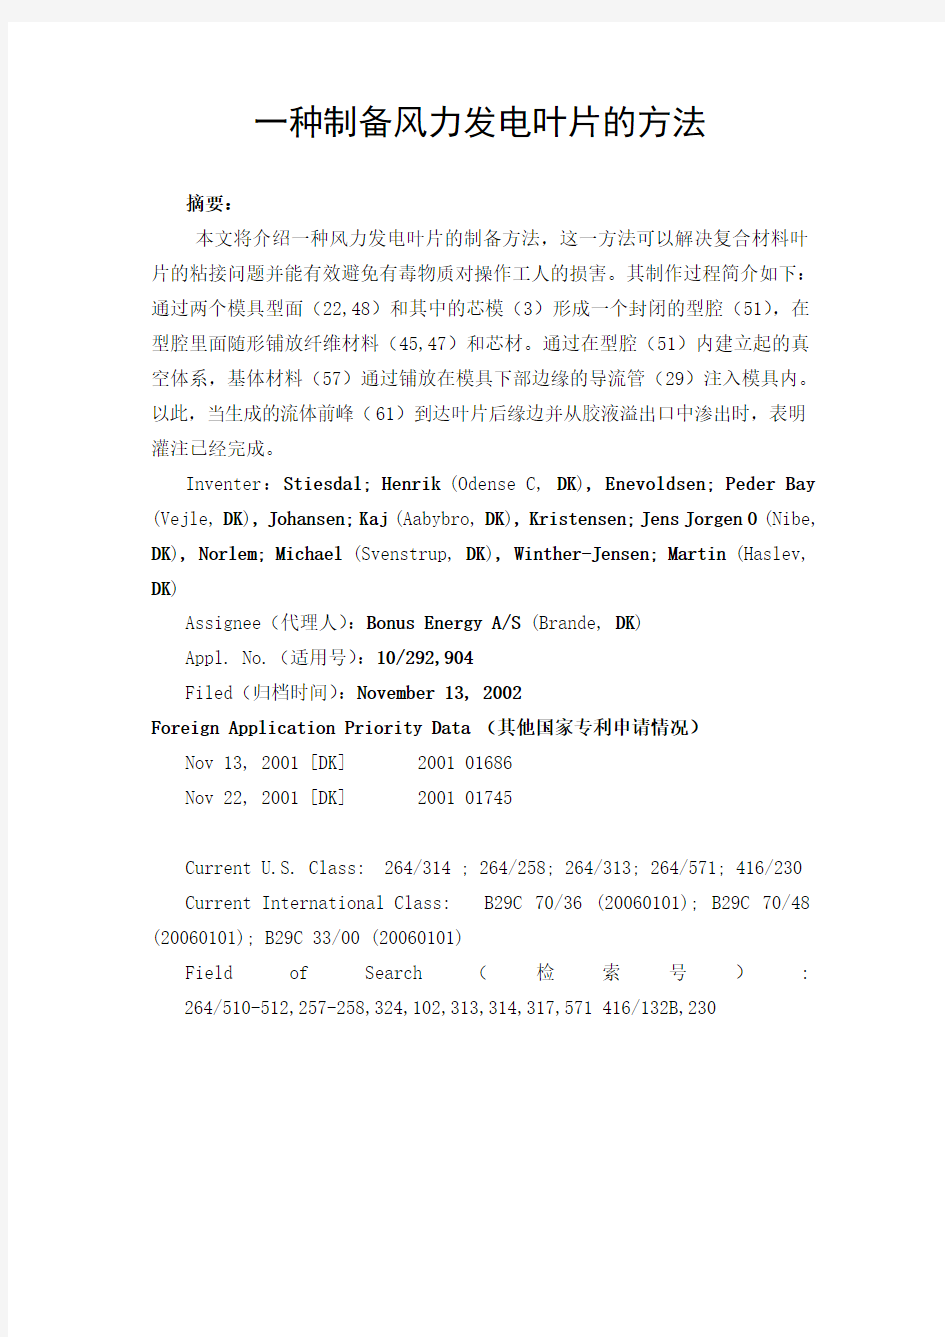 西门子风电叶片一体成型专利——中文